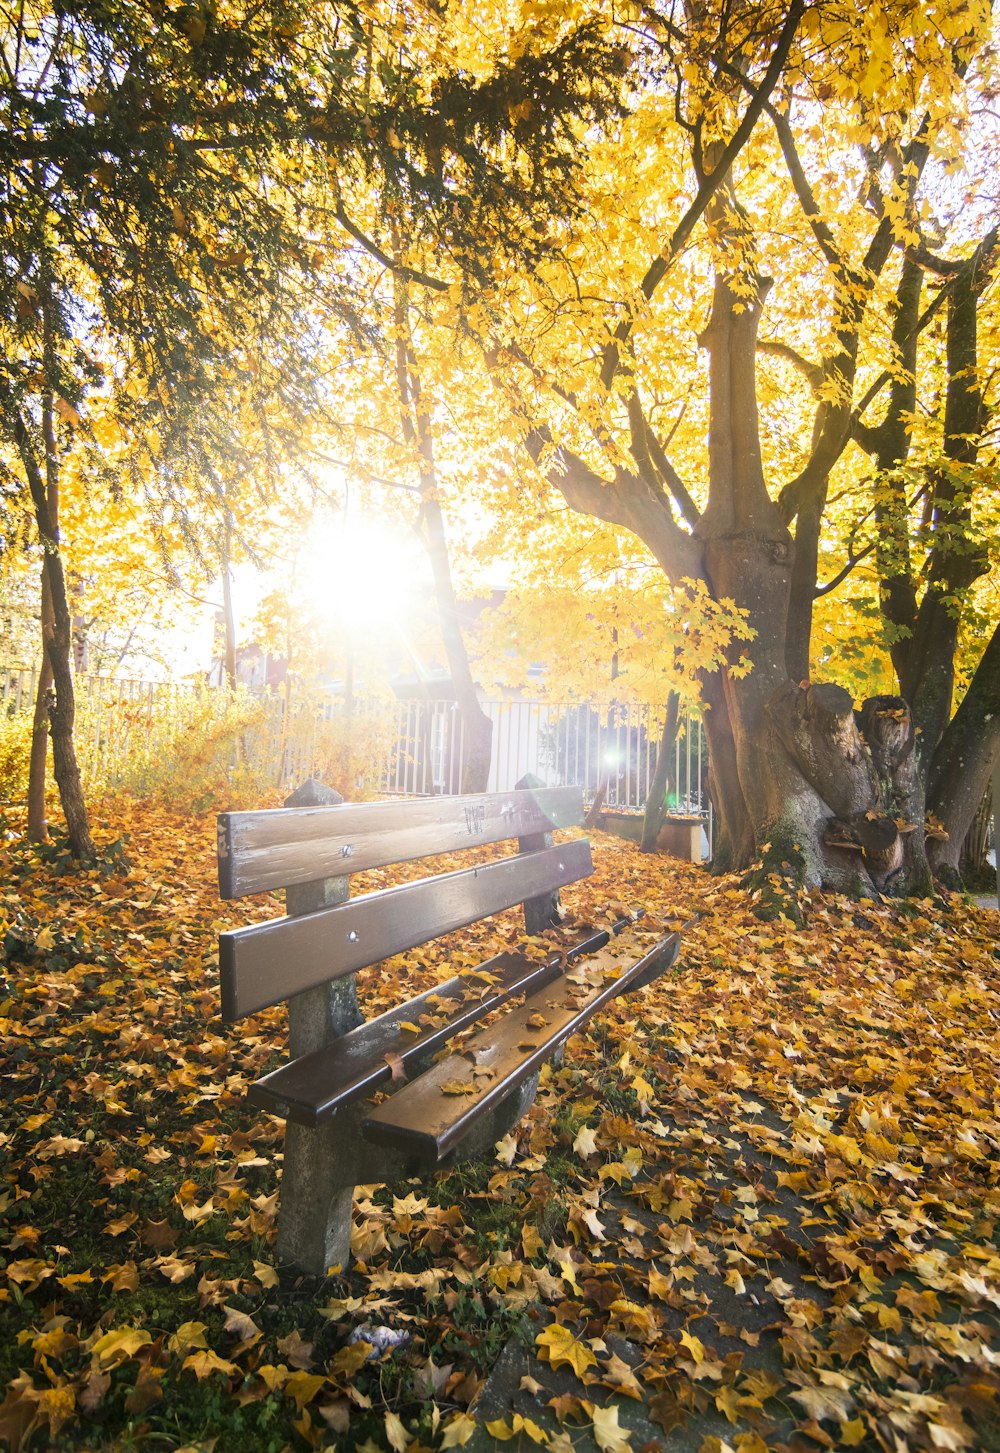 Una panchina del parco seduta nel mezzo di un parco coperto di foglie